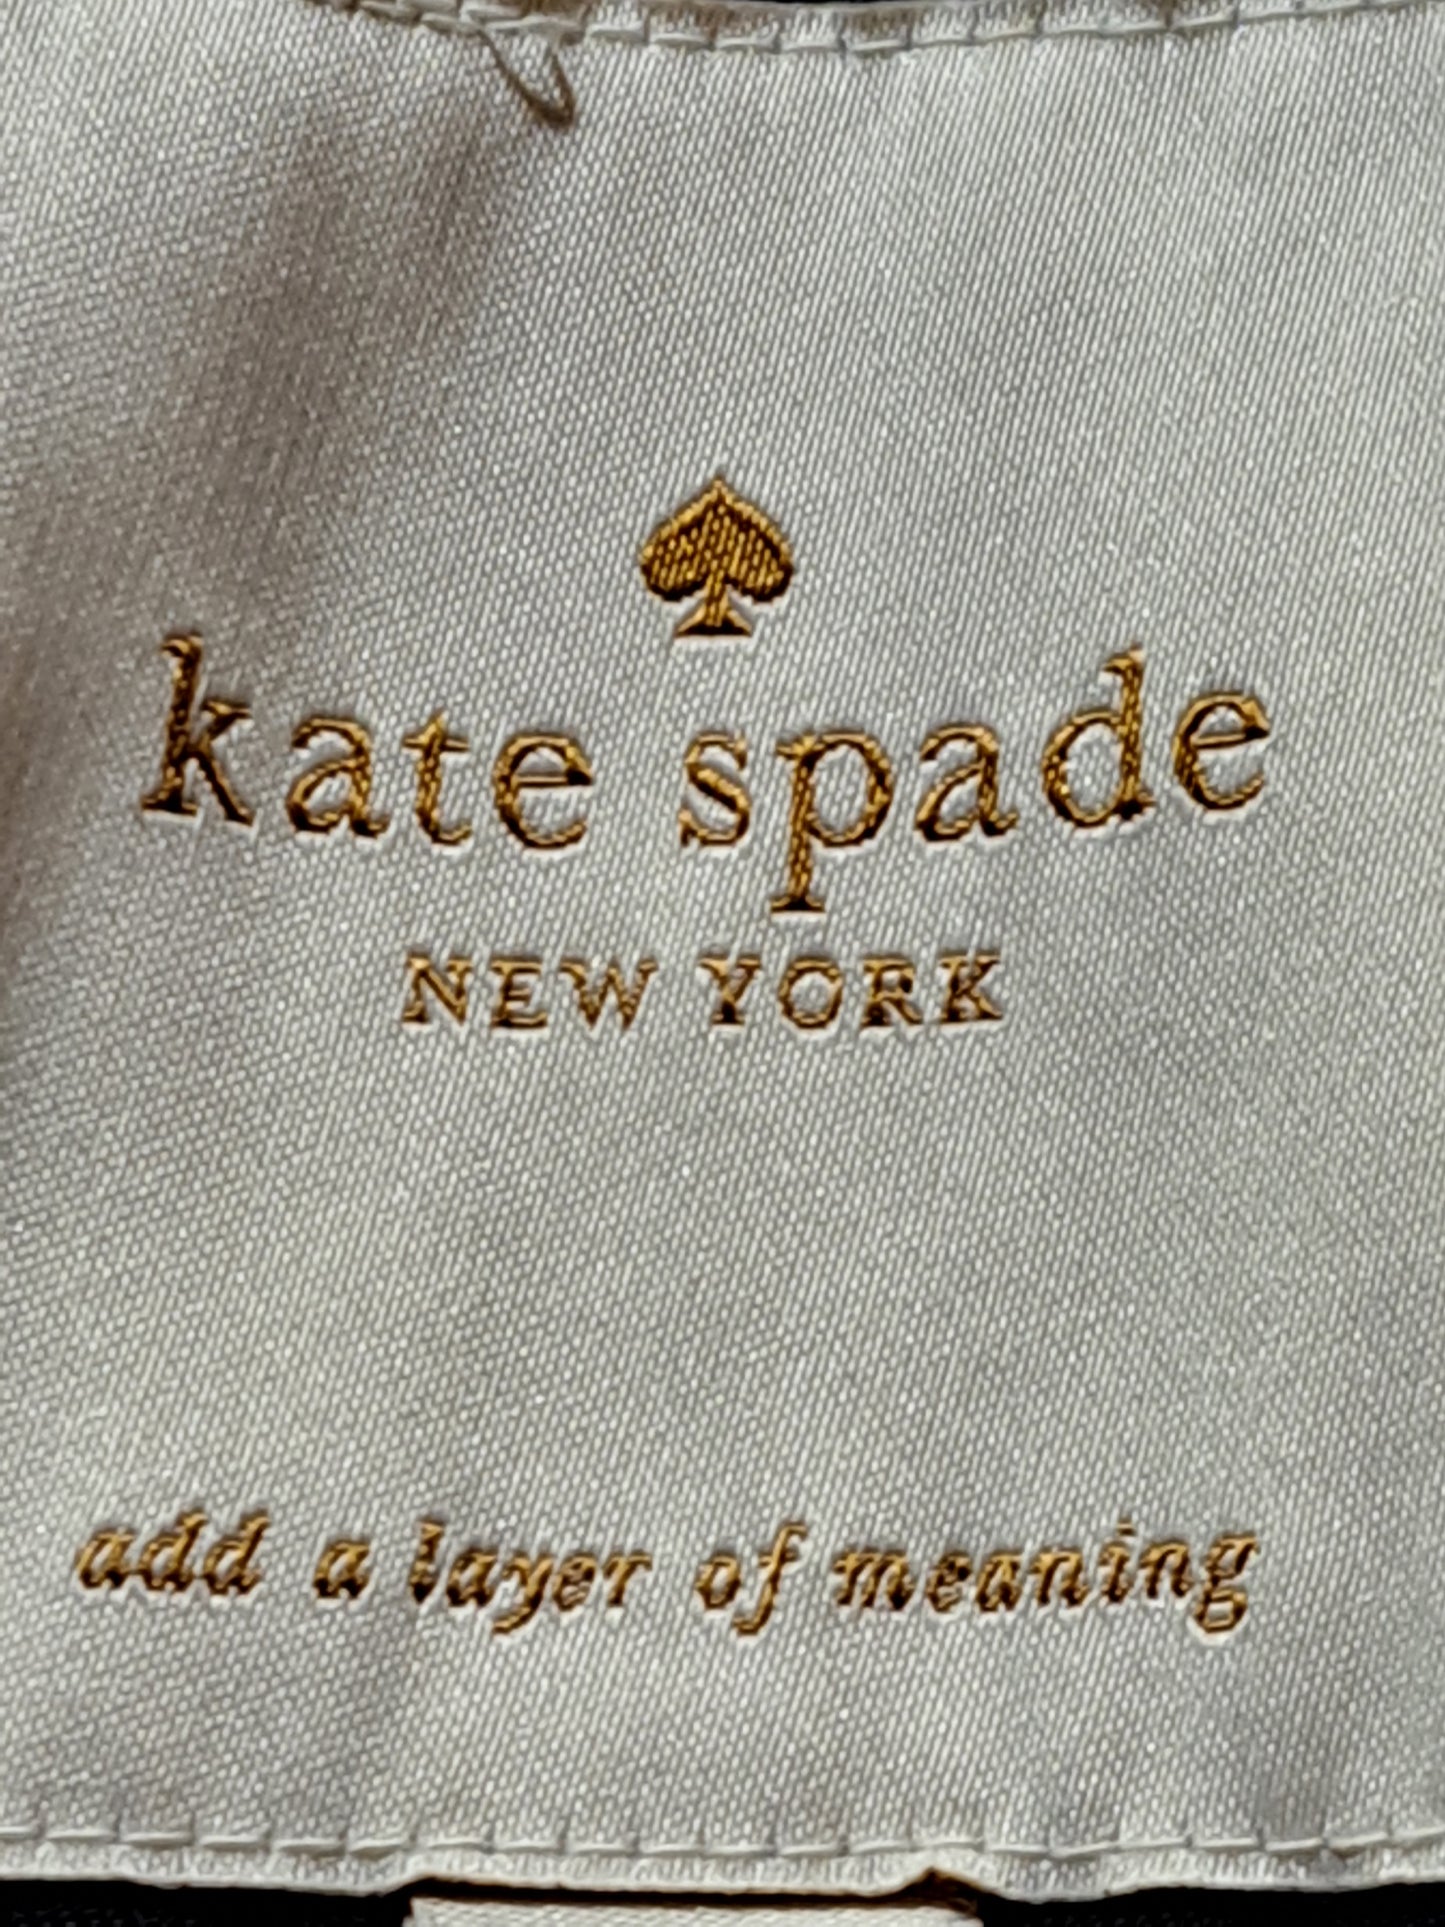 Kate Spade Winter Jacket Dark Blue - Medium